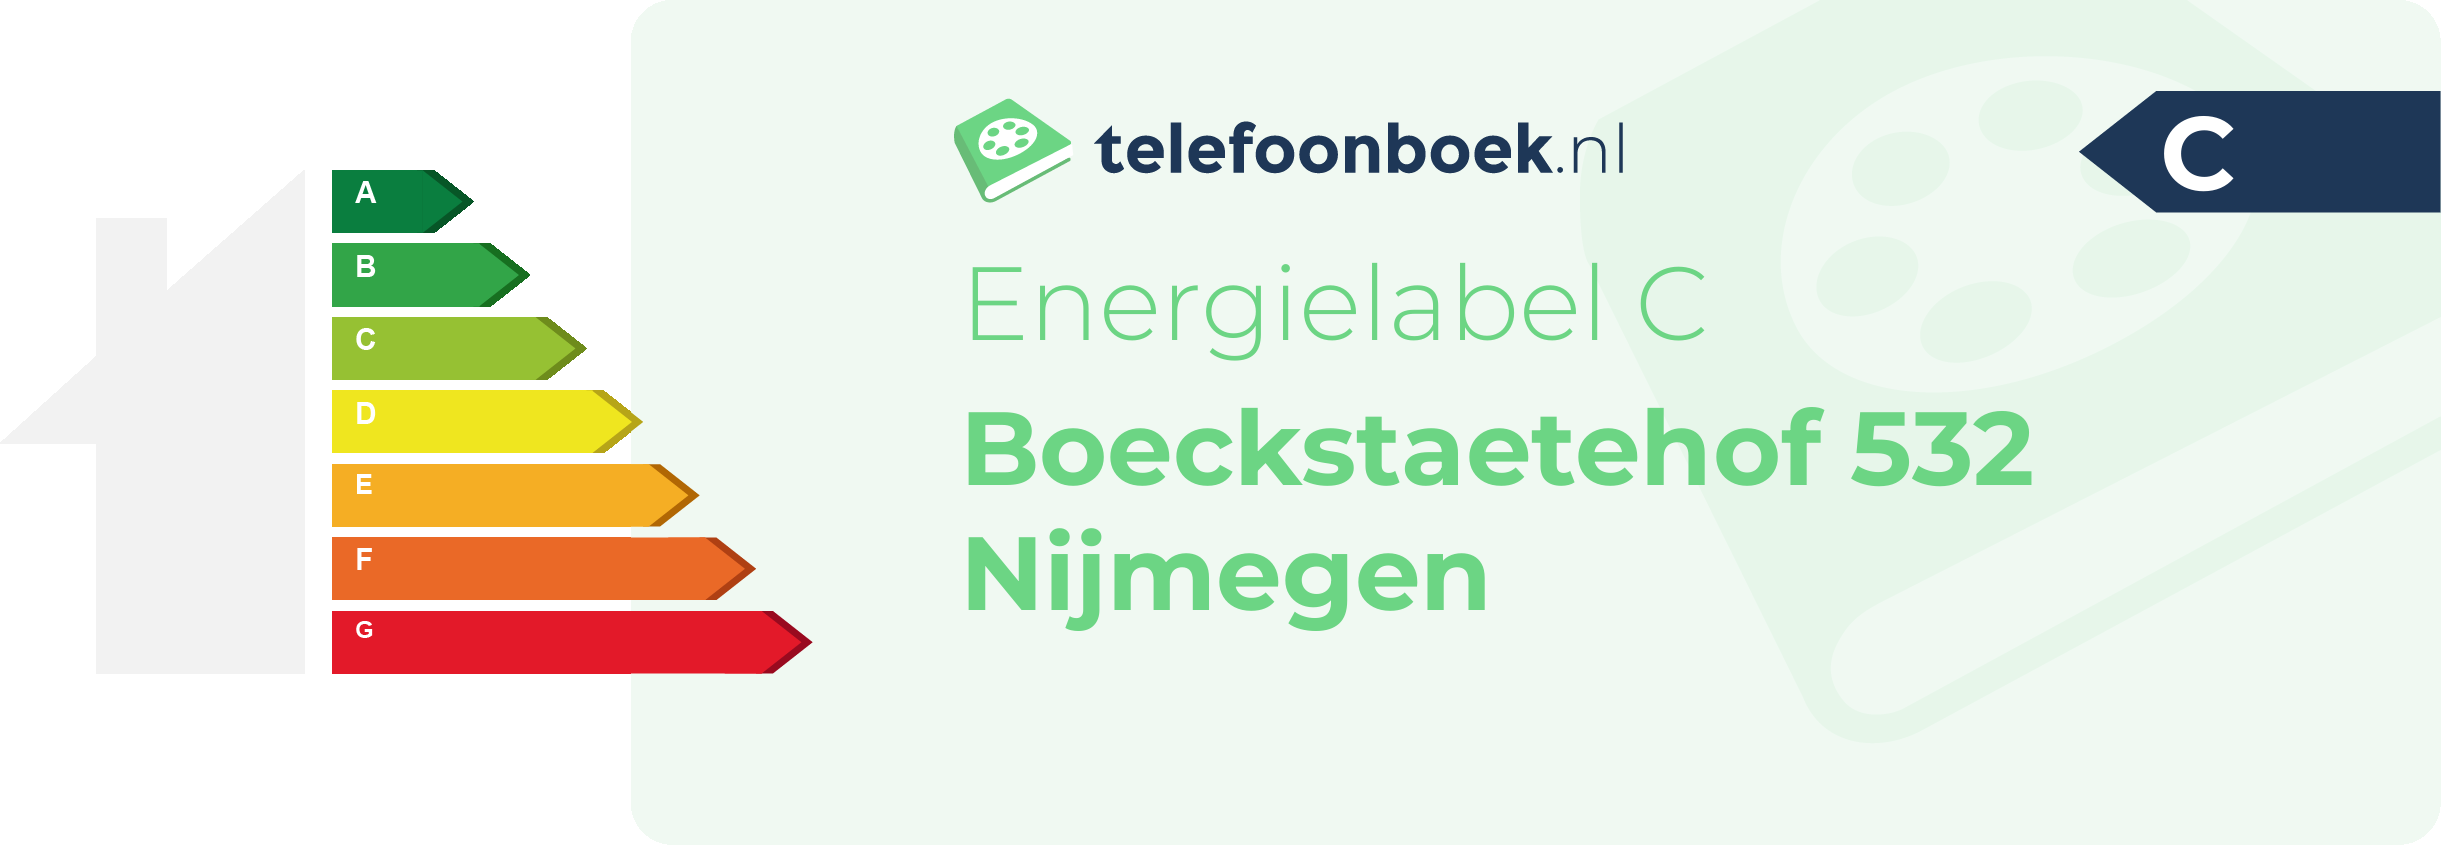 Energielabel Boeckstaetehof 532 Nijmegen